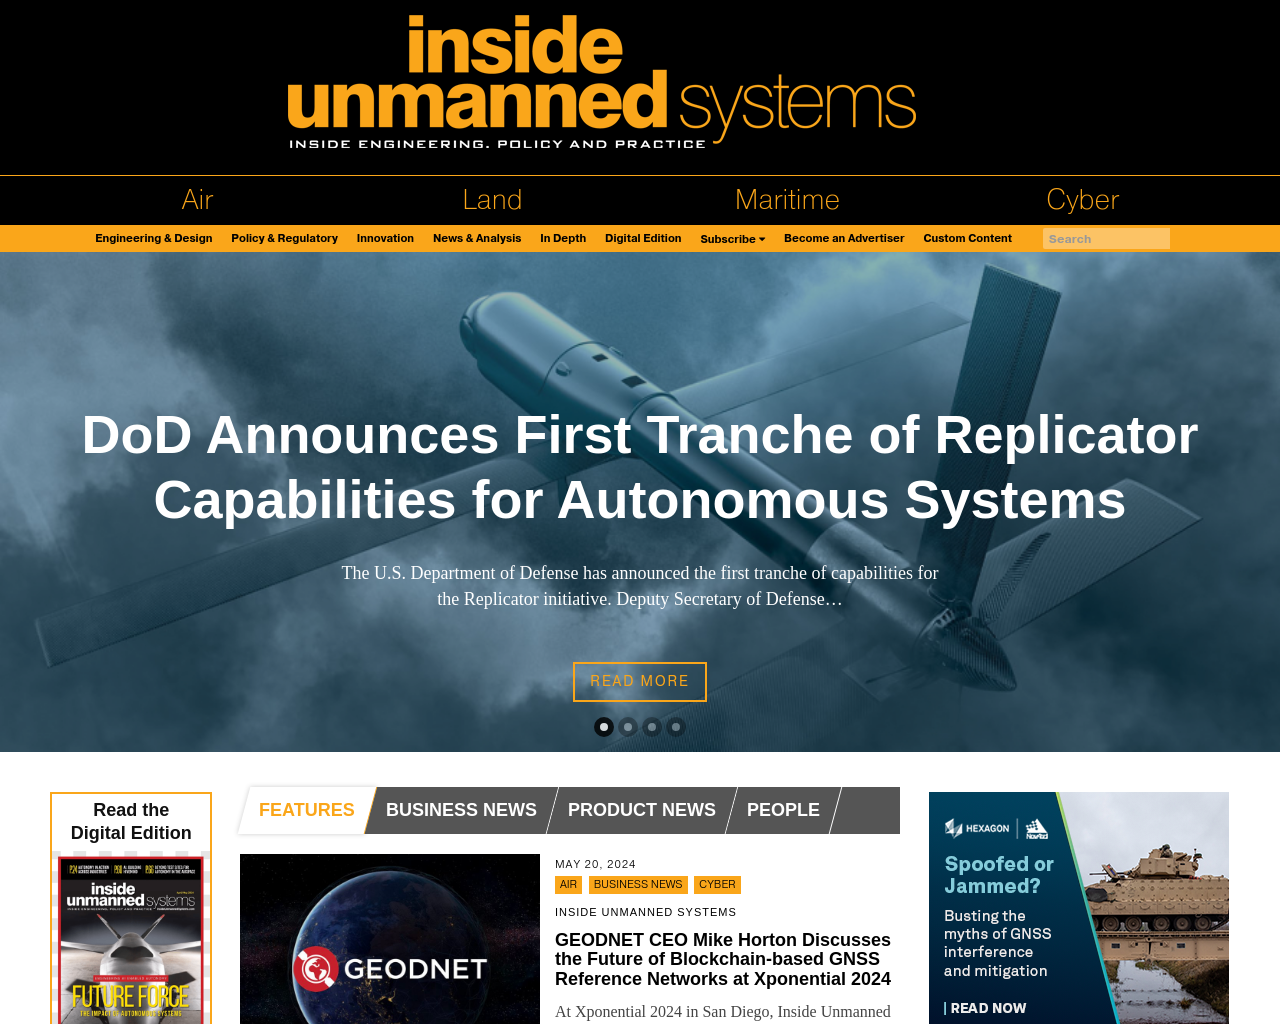 insideunmannedsystems.com